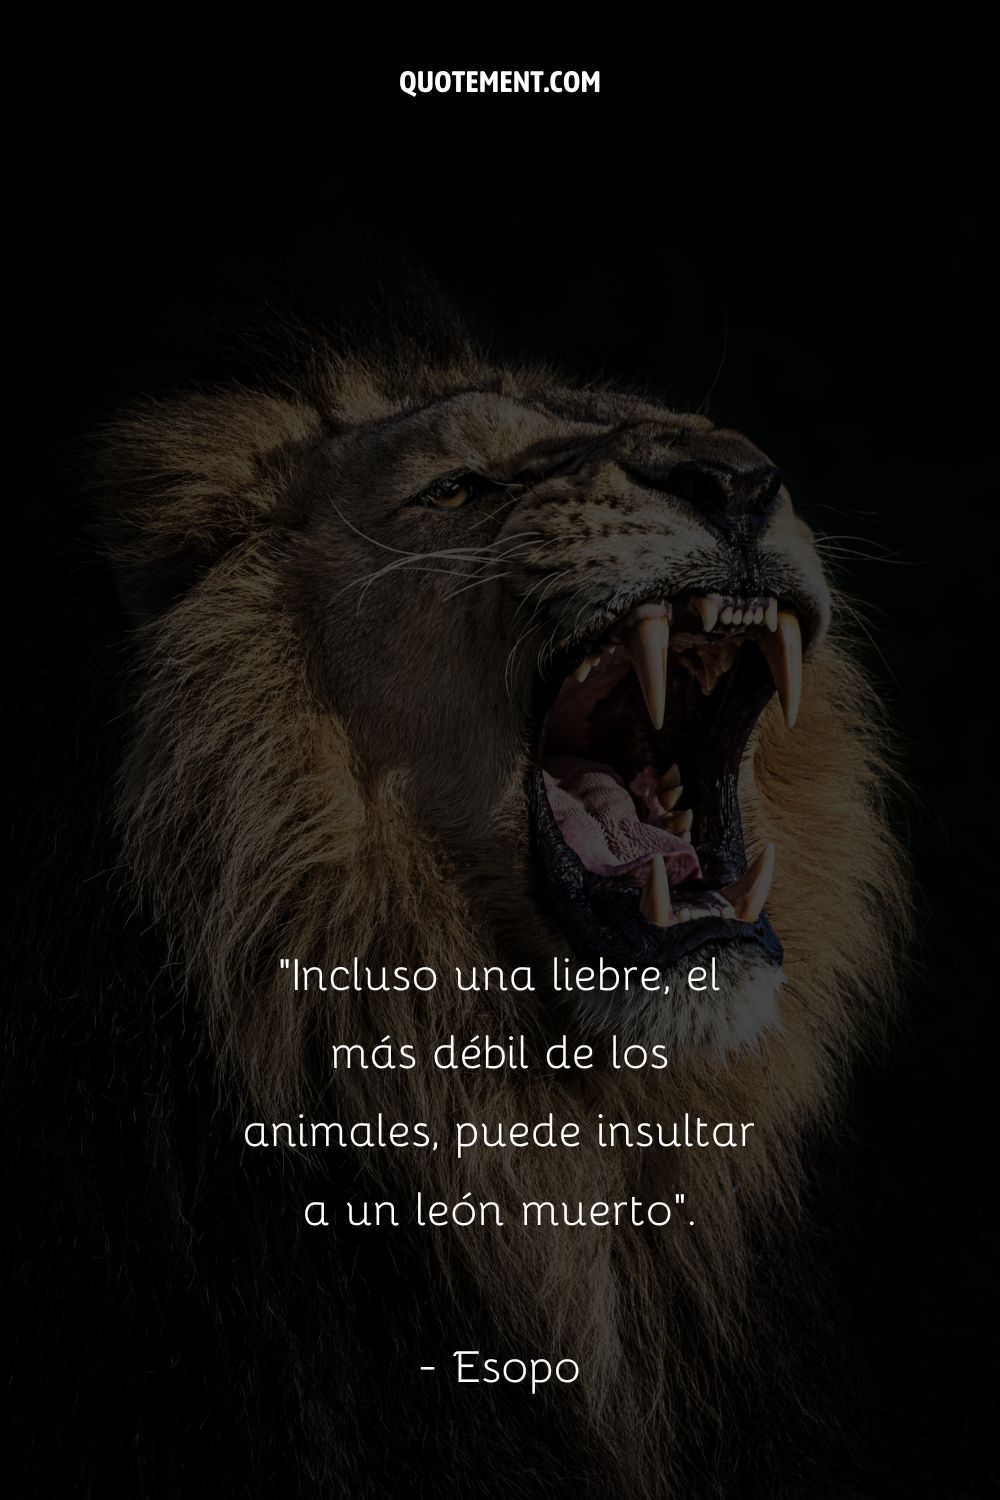 Incluso una liebre, el más débil de los animales, puede insultar a un león muerto